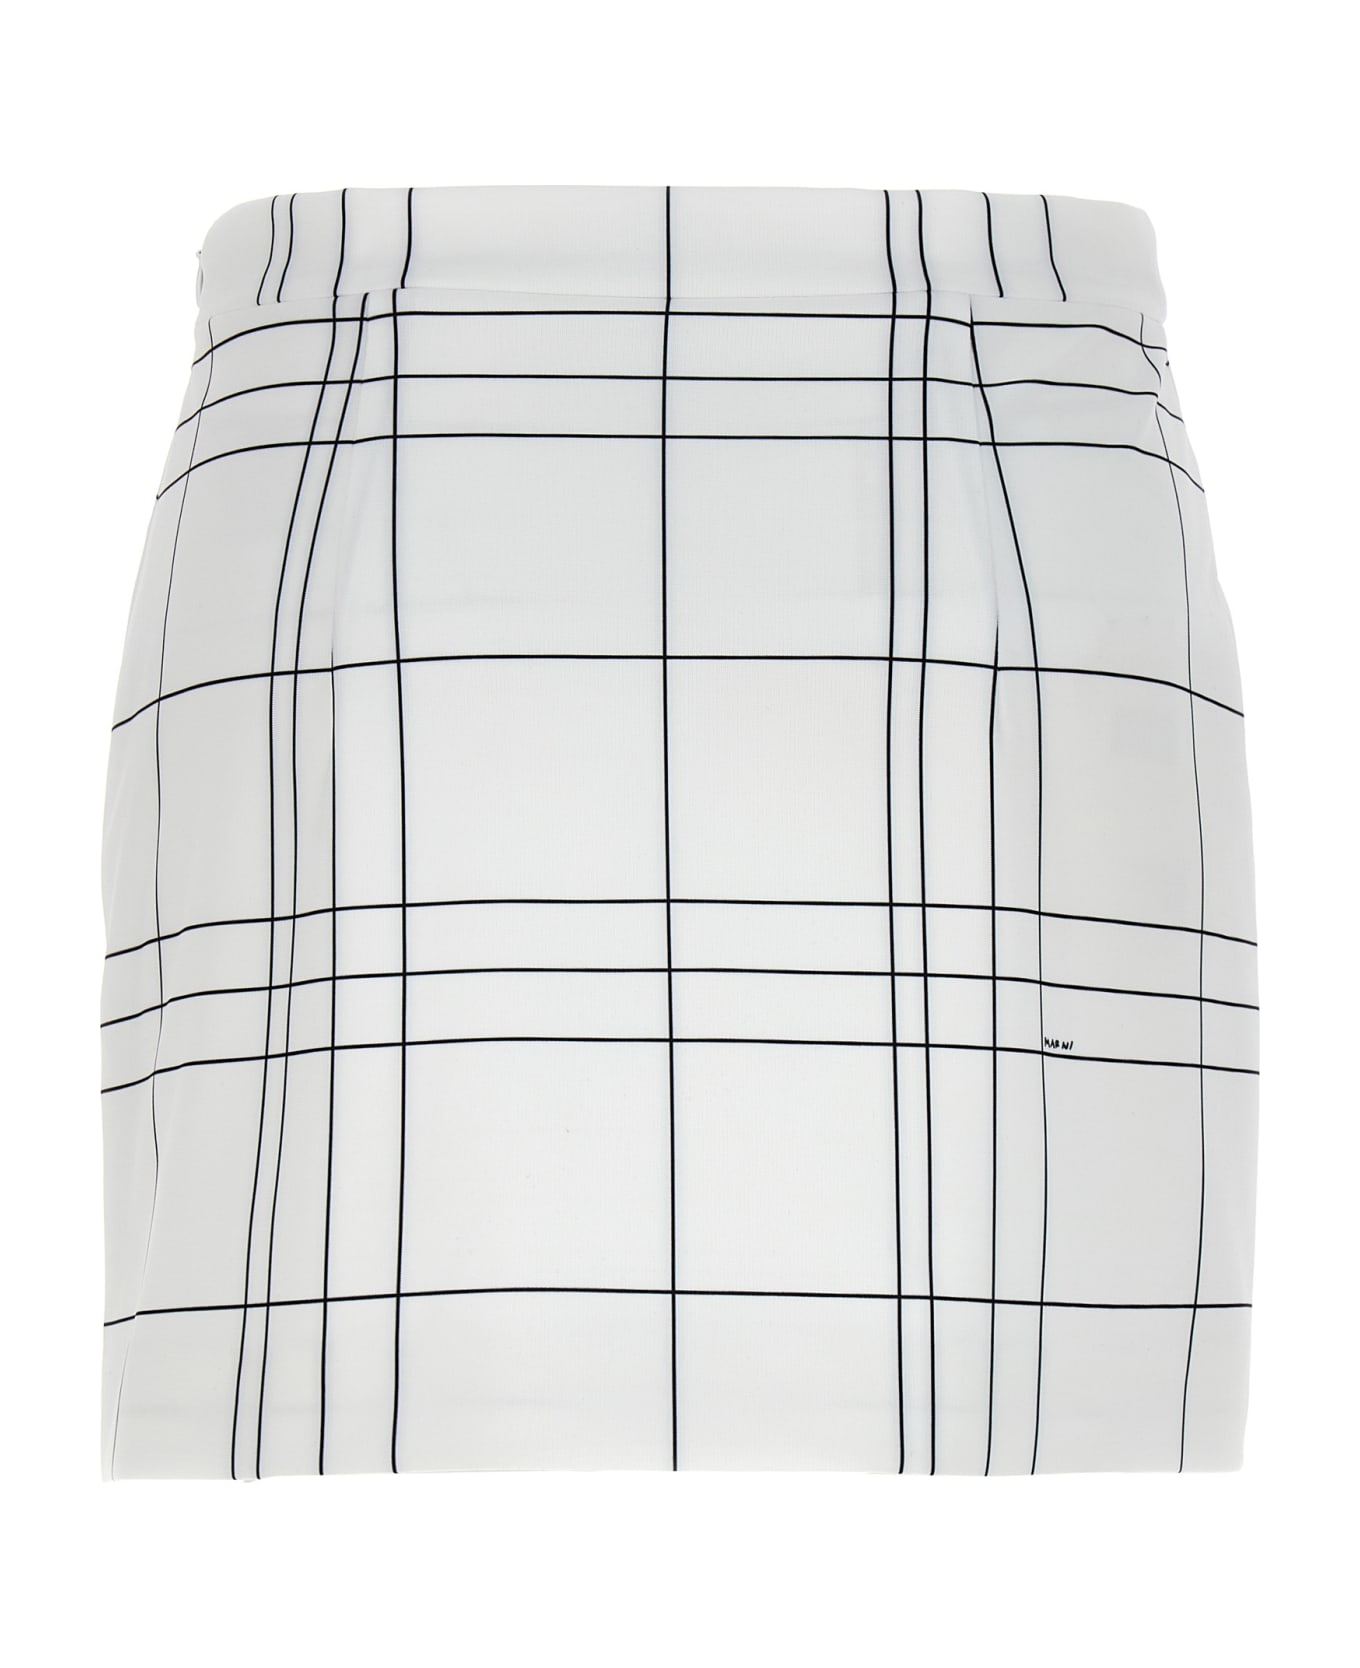 Marni Patterned Skirt - White/Black